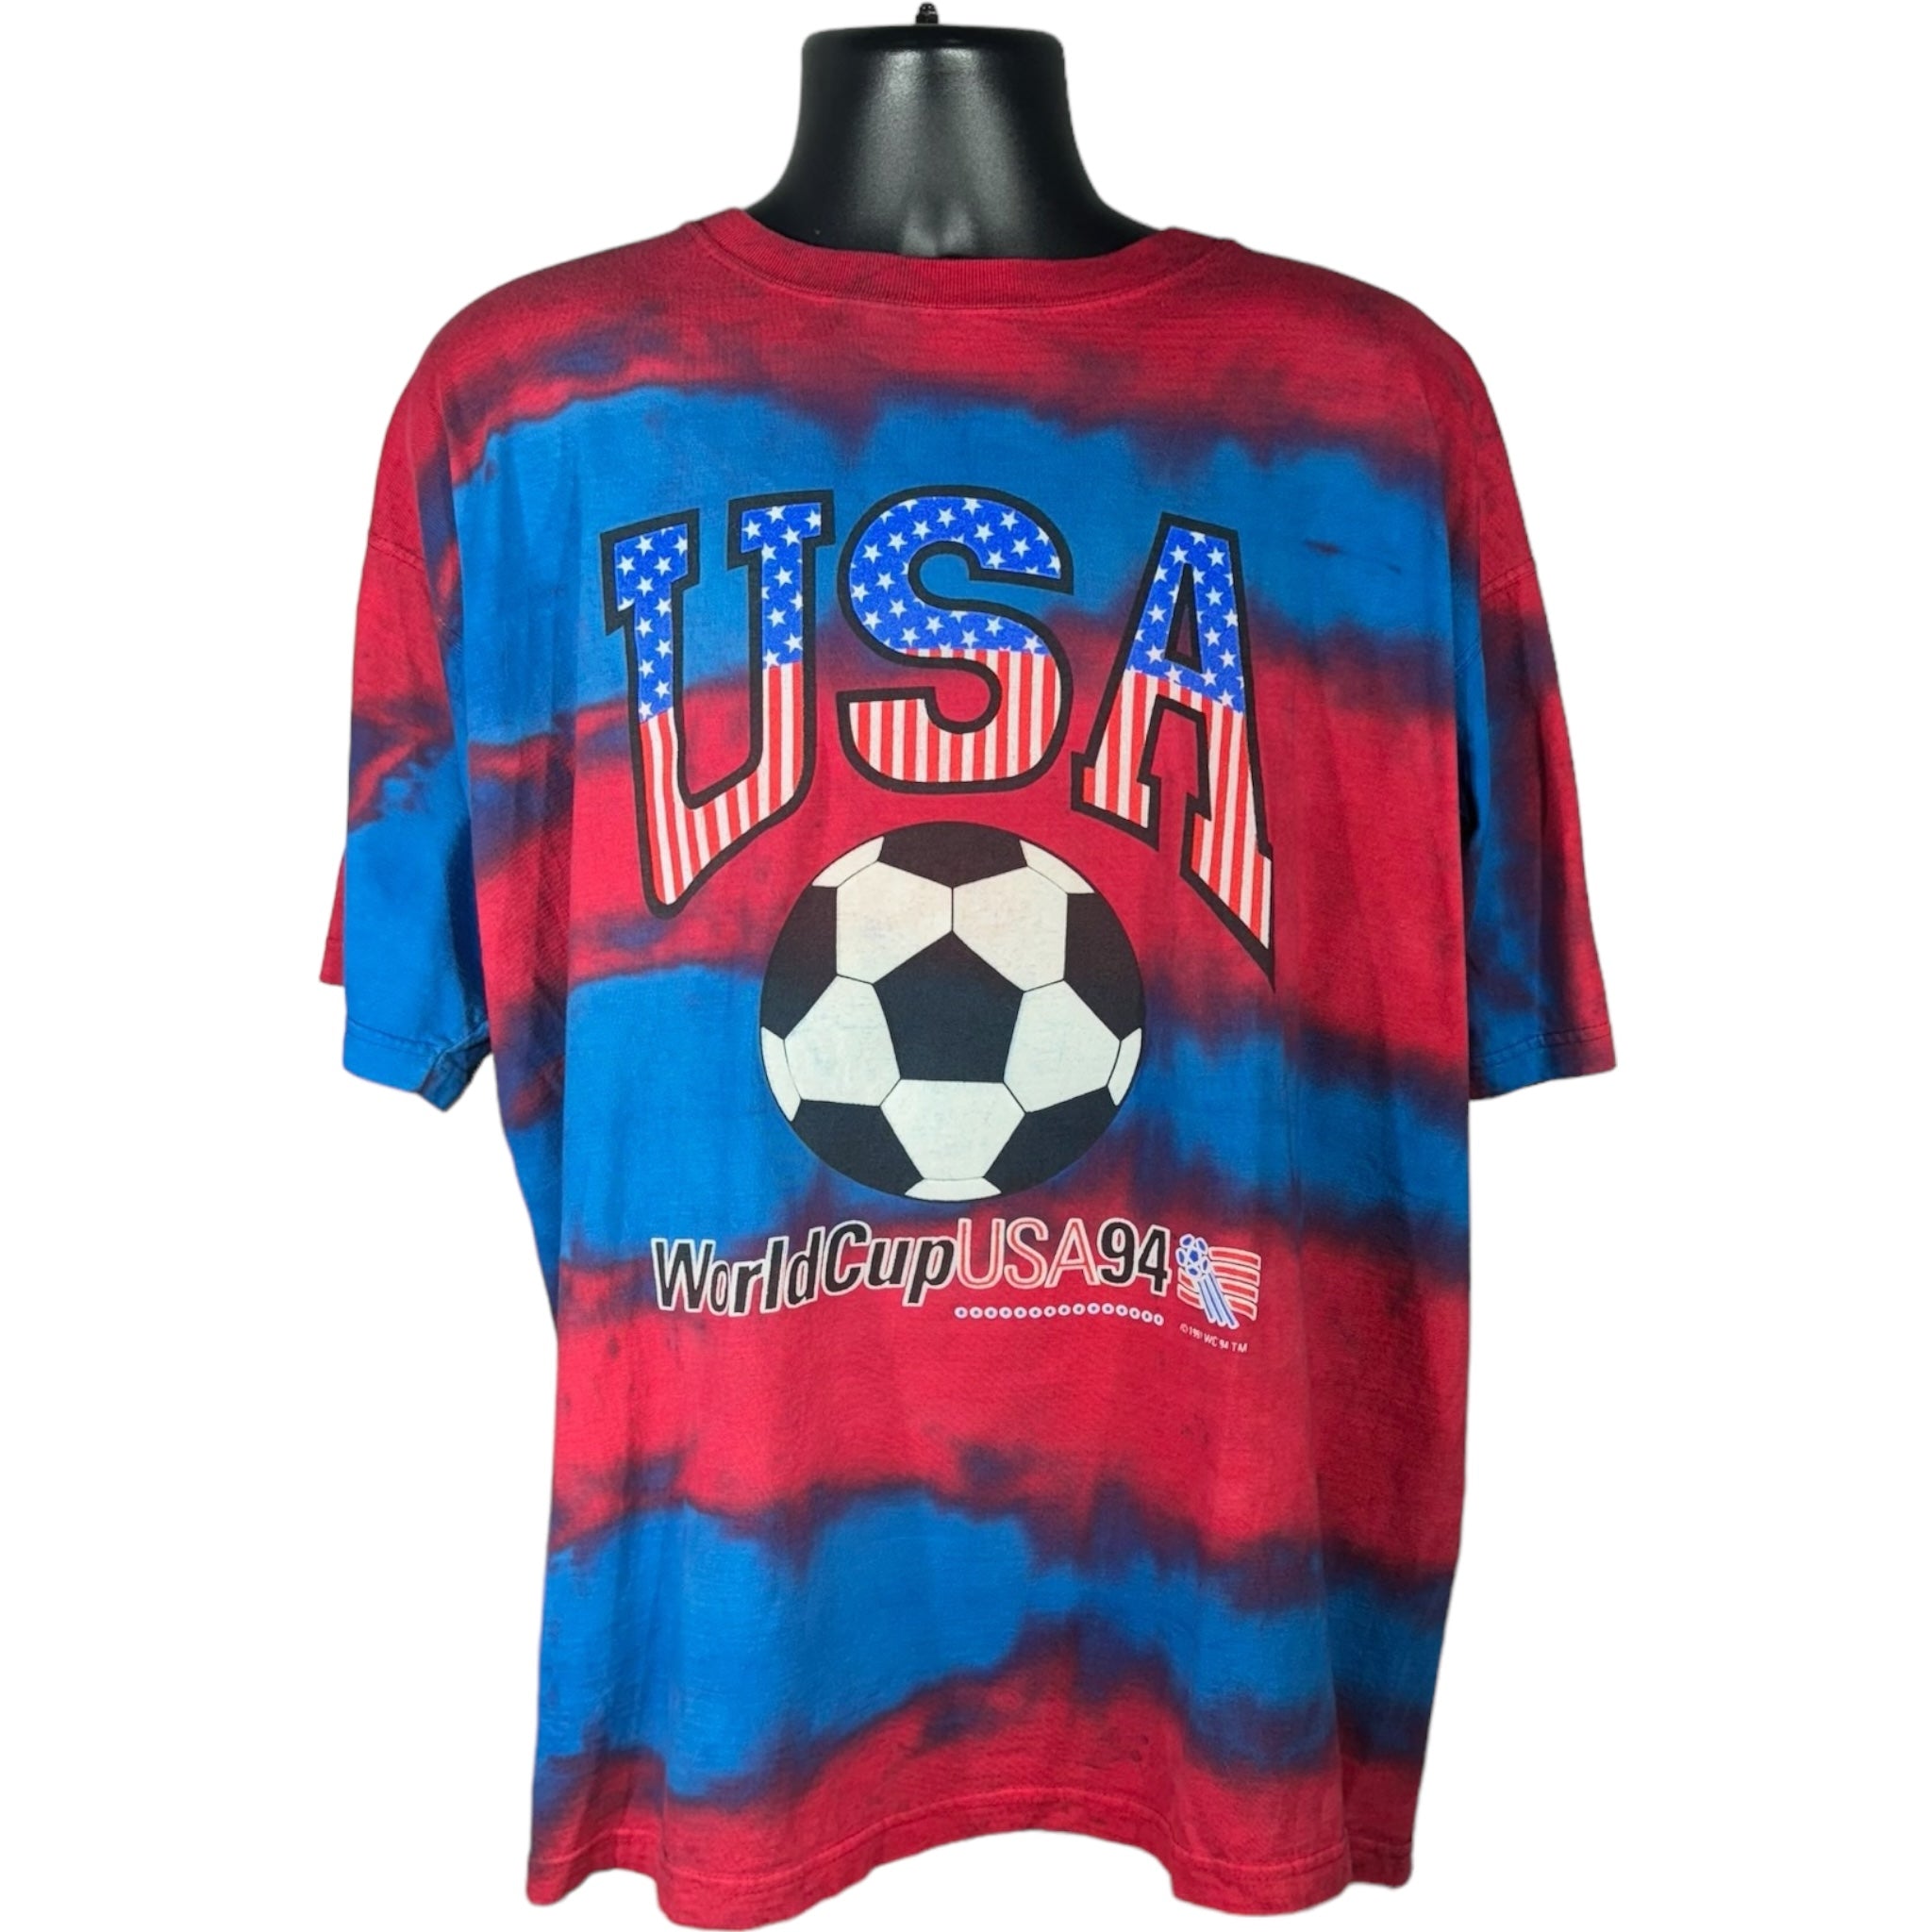 Vintage World Cup USA Tee 1994